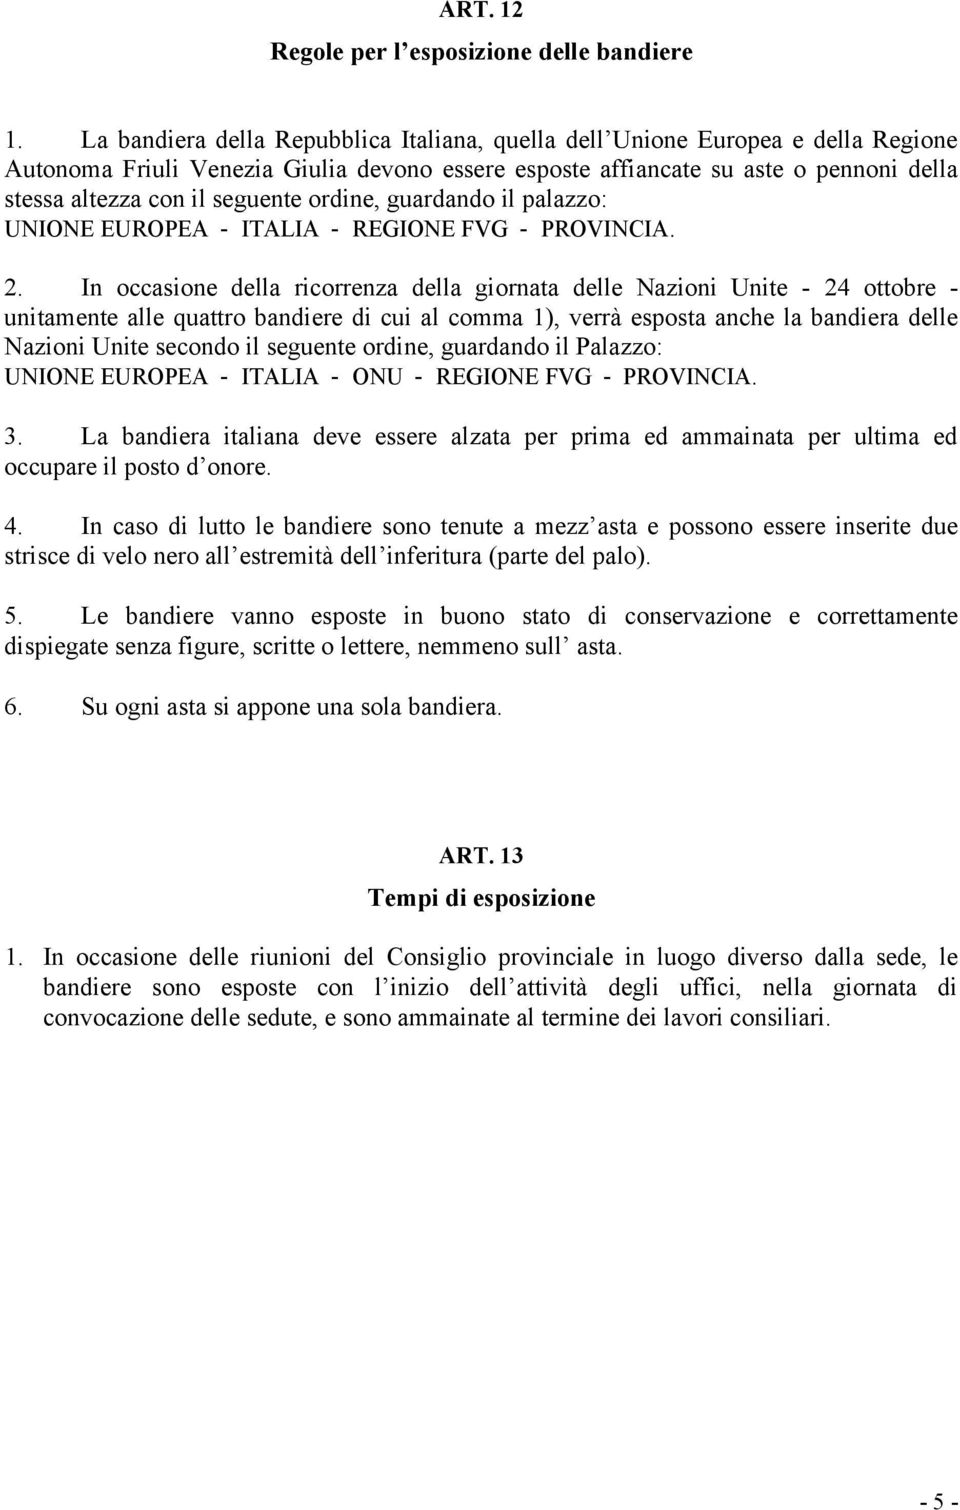 seguente ordine, guardando il palazzo: UNIONE EUROPEA - ITALIA - REGIONE FVG - PROVINCIA. 2.